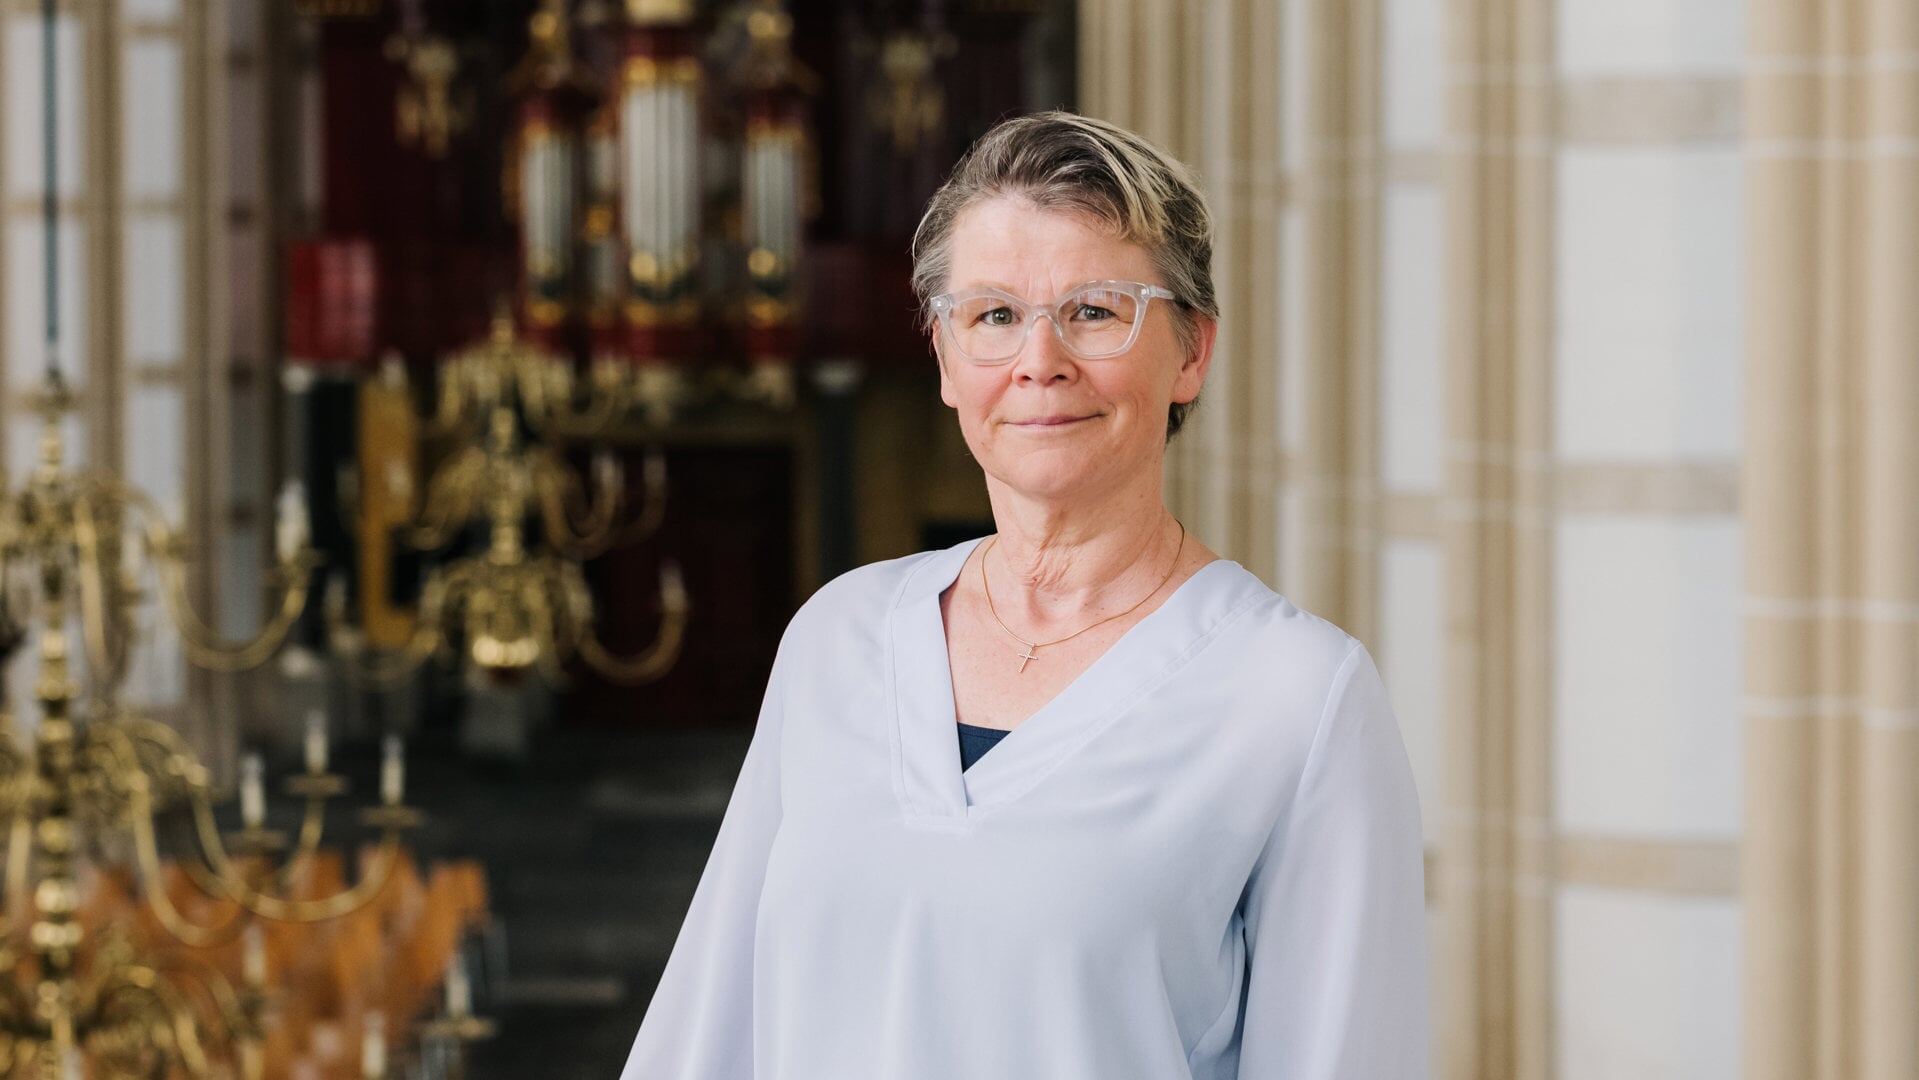 Trijnie Bouw is de nieuwe voorzitter van de synode van de Protestantse Kerk in Nederland